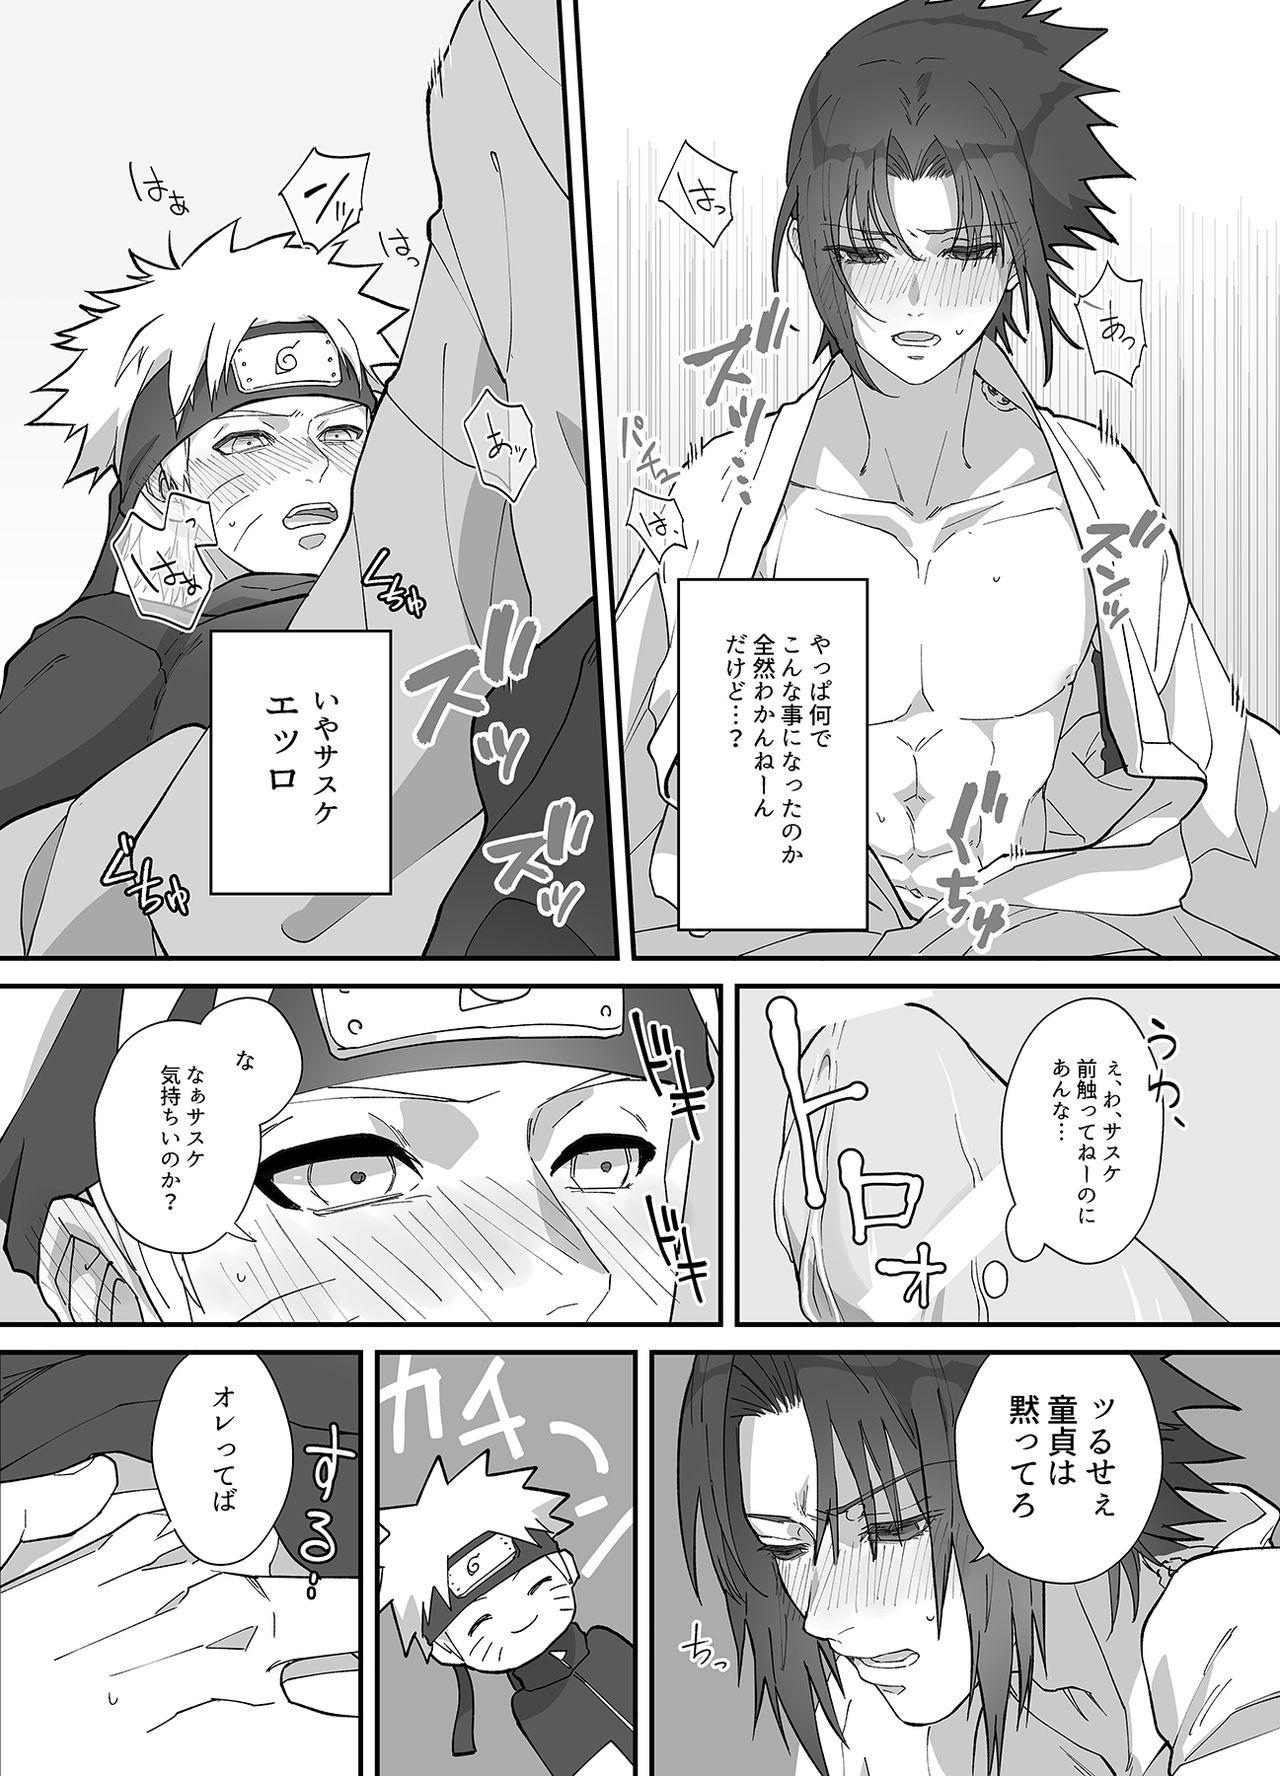 Gay Cash NaruSasu Only Kaisei Omedetougozaimasu! - Naruto 18yearsold - Page 9